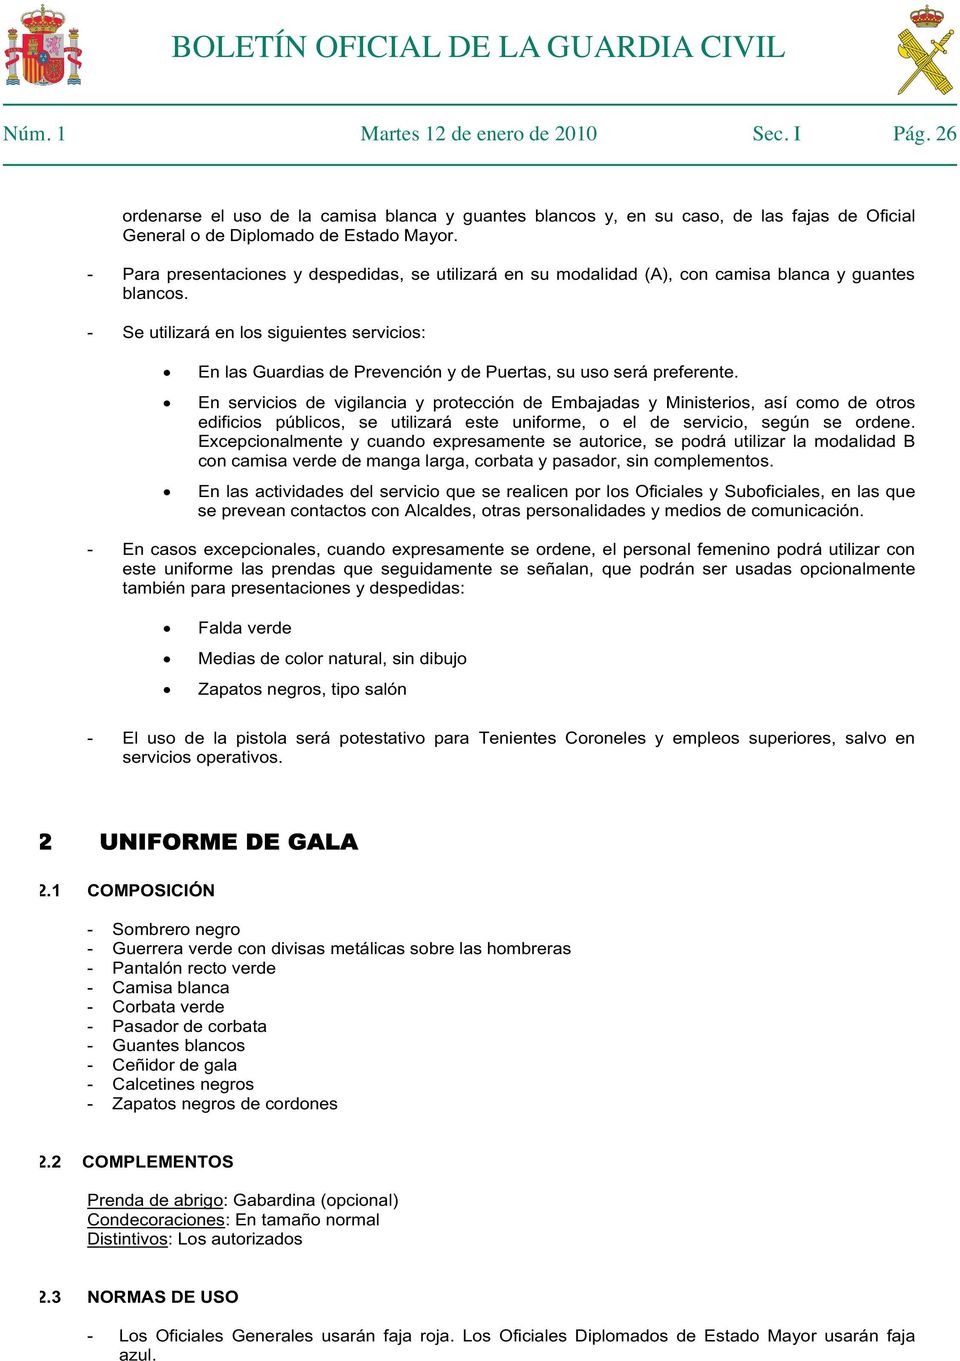 BOLETÍN OFICIAL LA GUARDIA CIVIL PDF Descargar libre